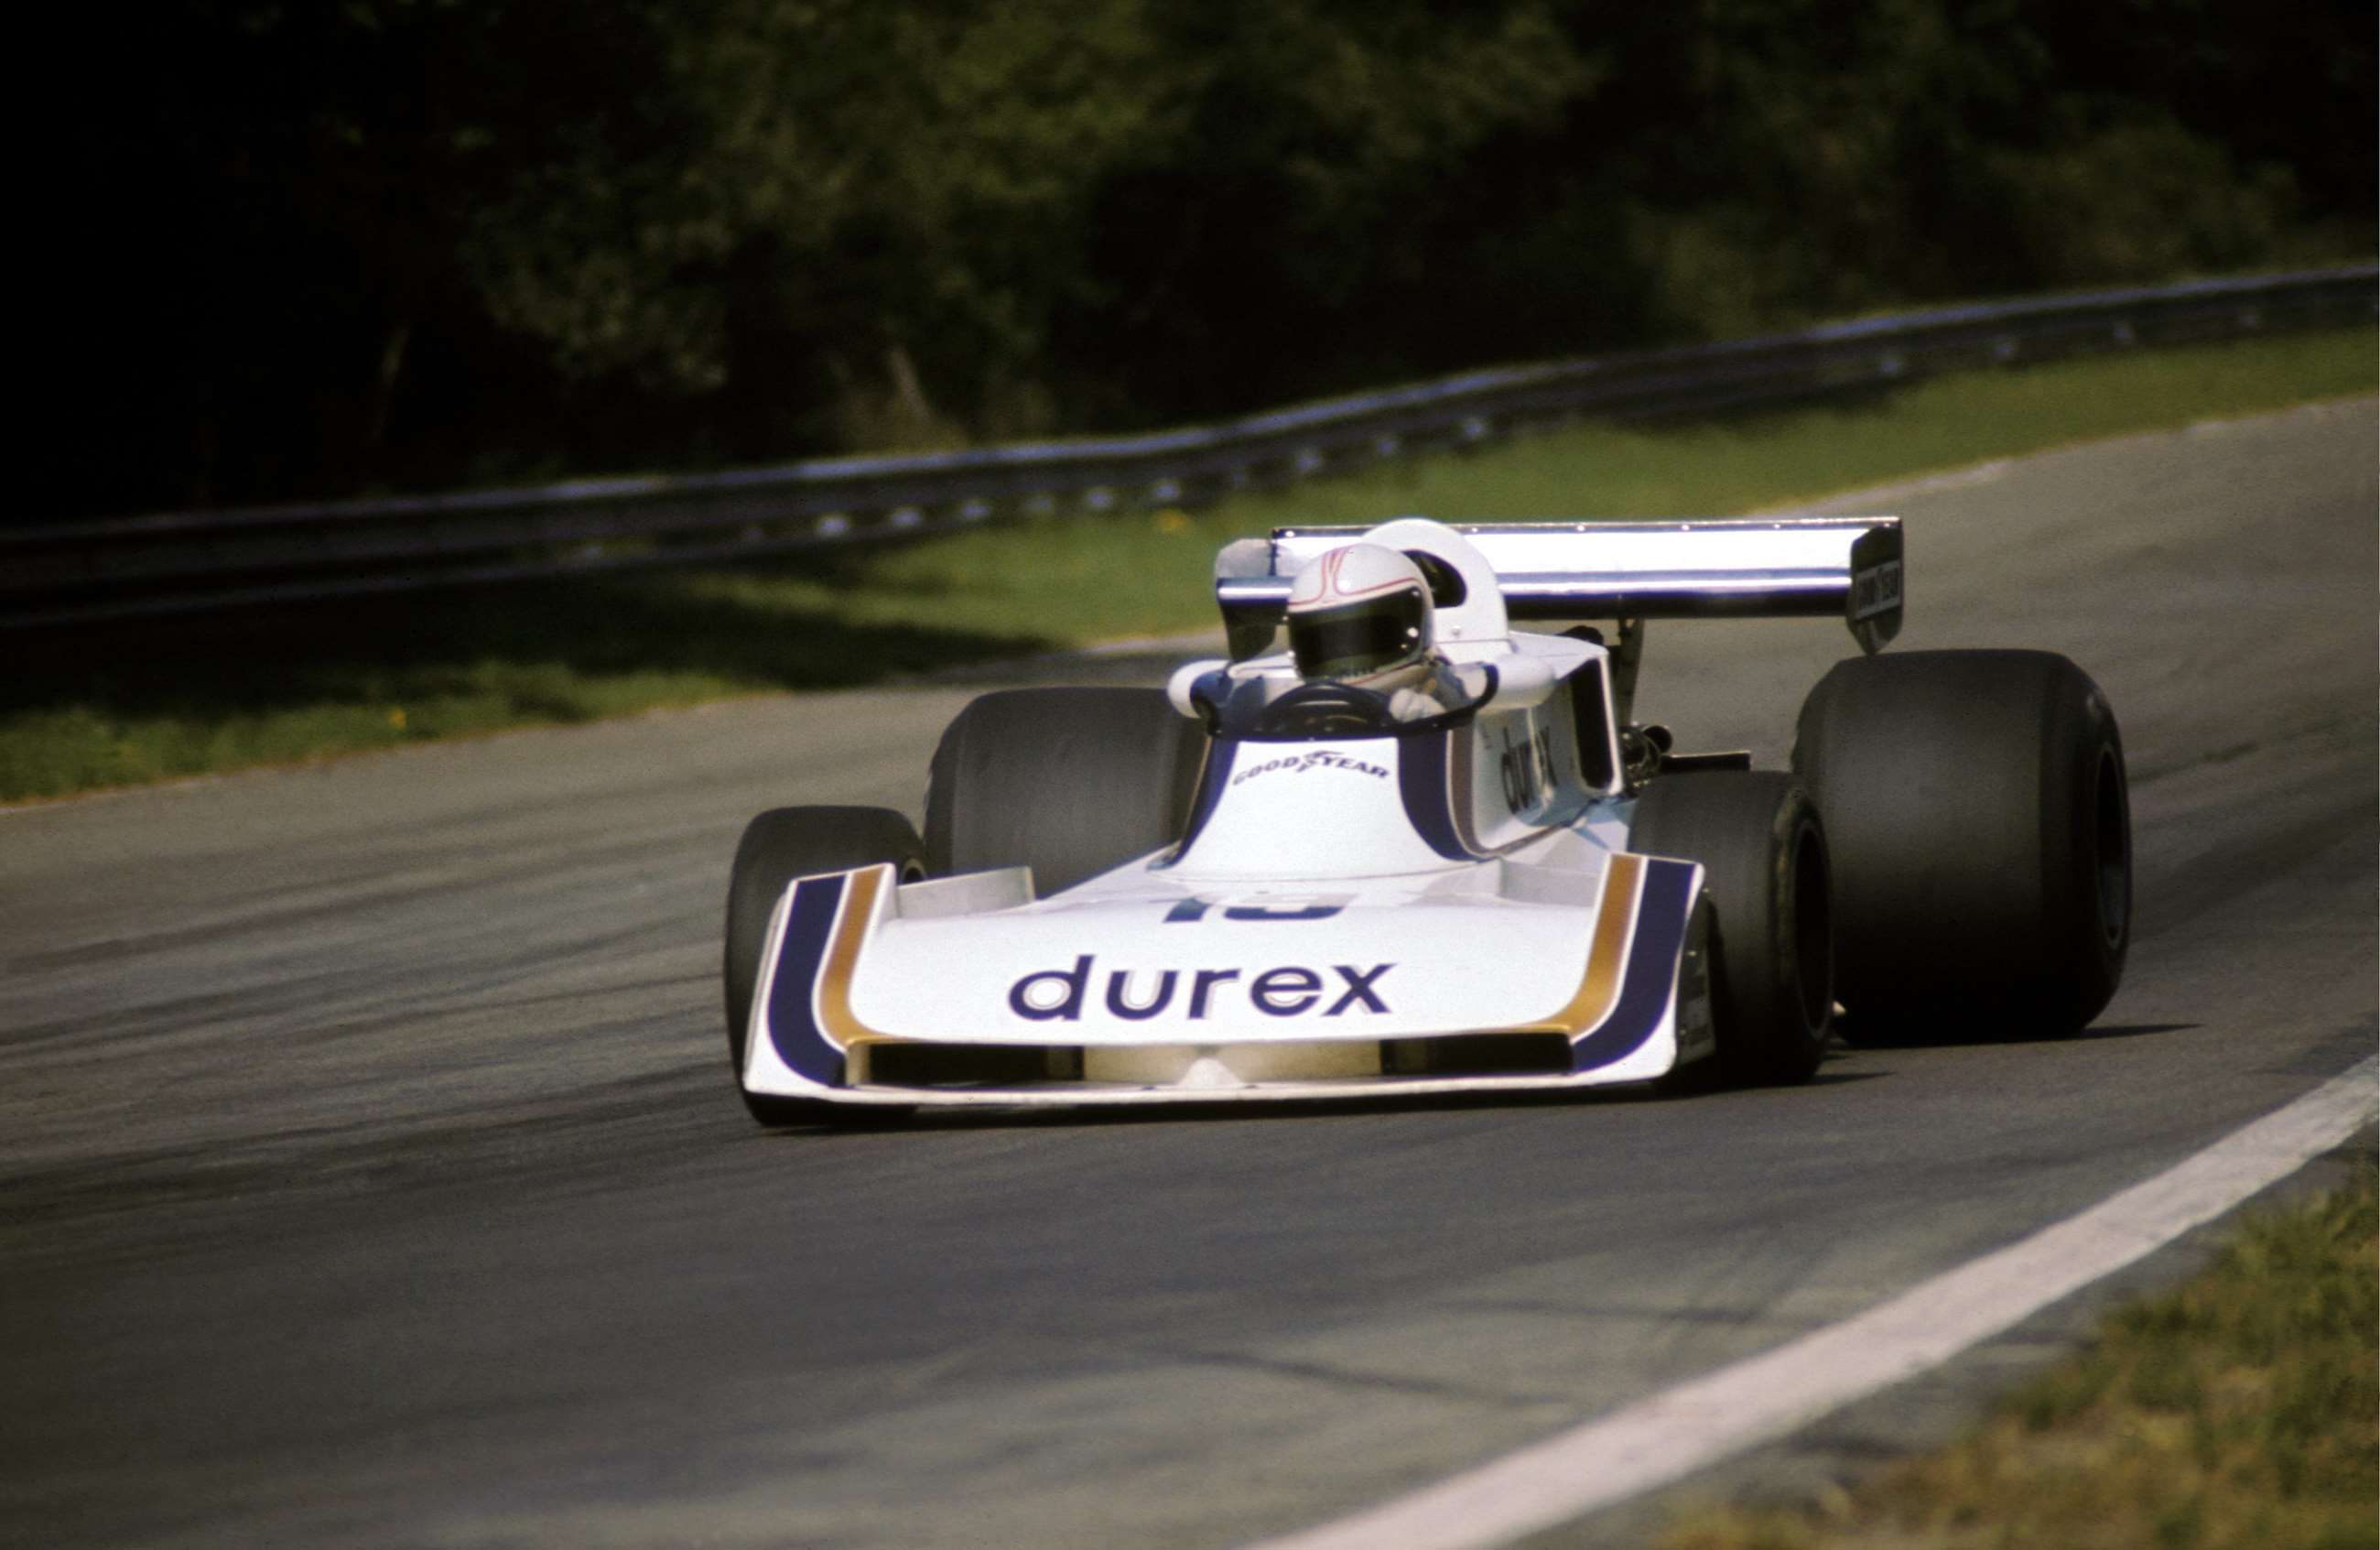 f1-1976-belgium-surtees-ts19-durex-alan-jones-david-phipps-motorsport-images-goodwood-05062019.jpg